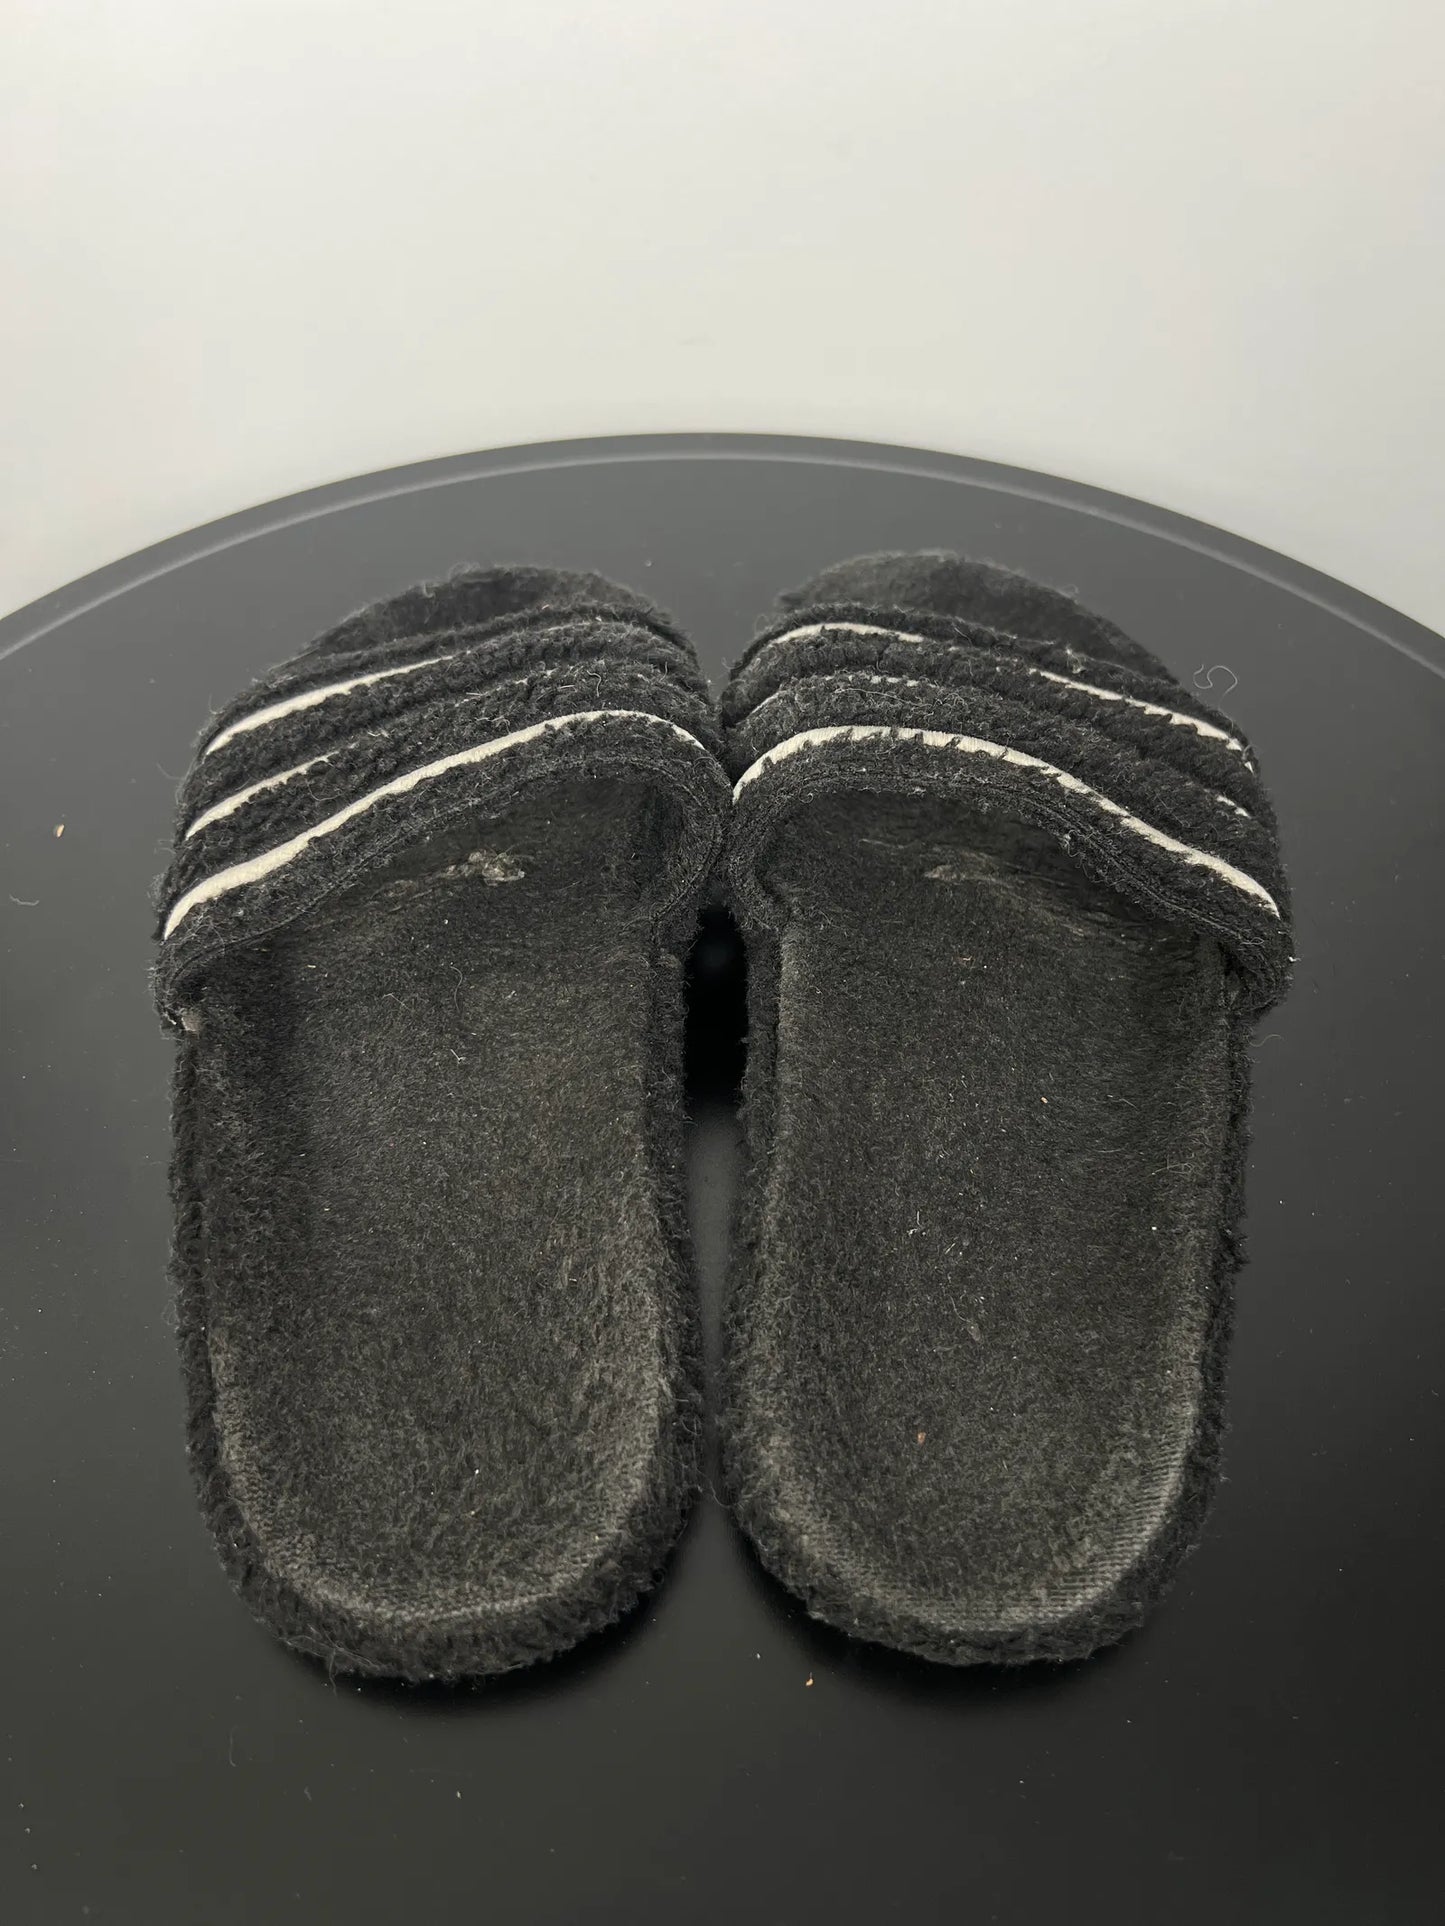 Adidas-flip-flops